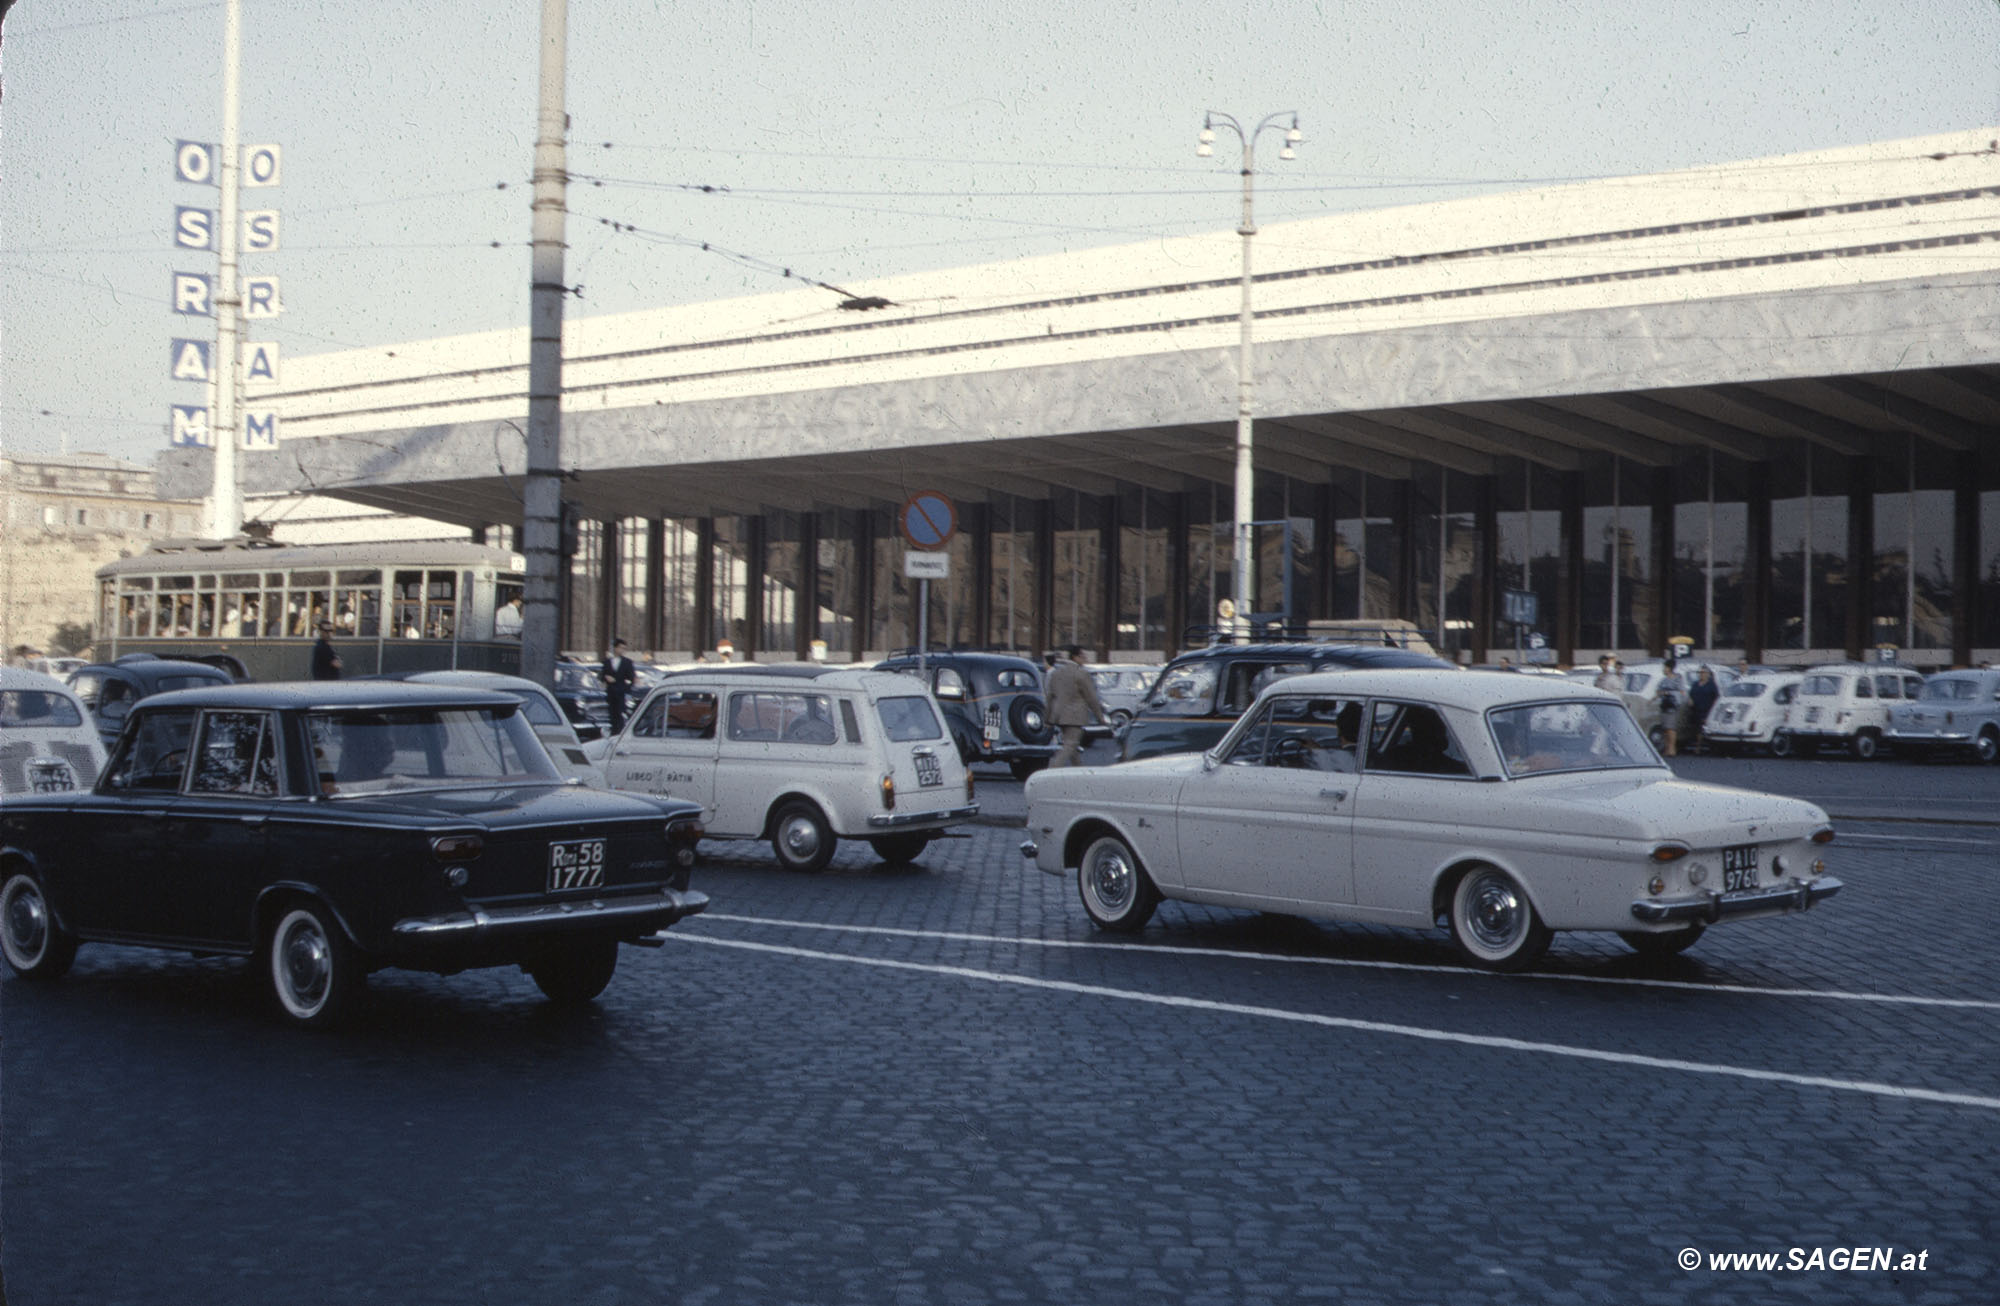 Bahnhof Roma Termini